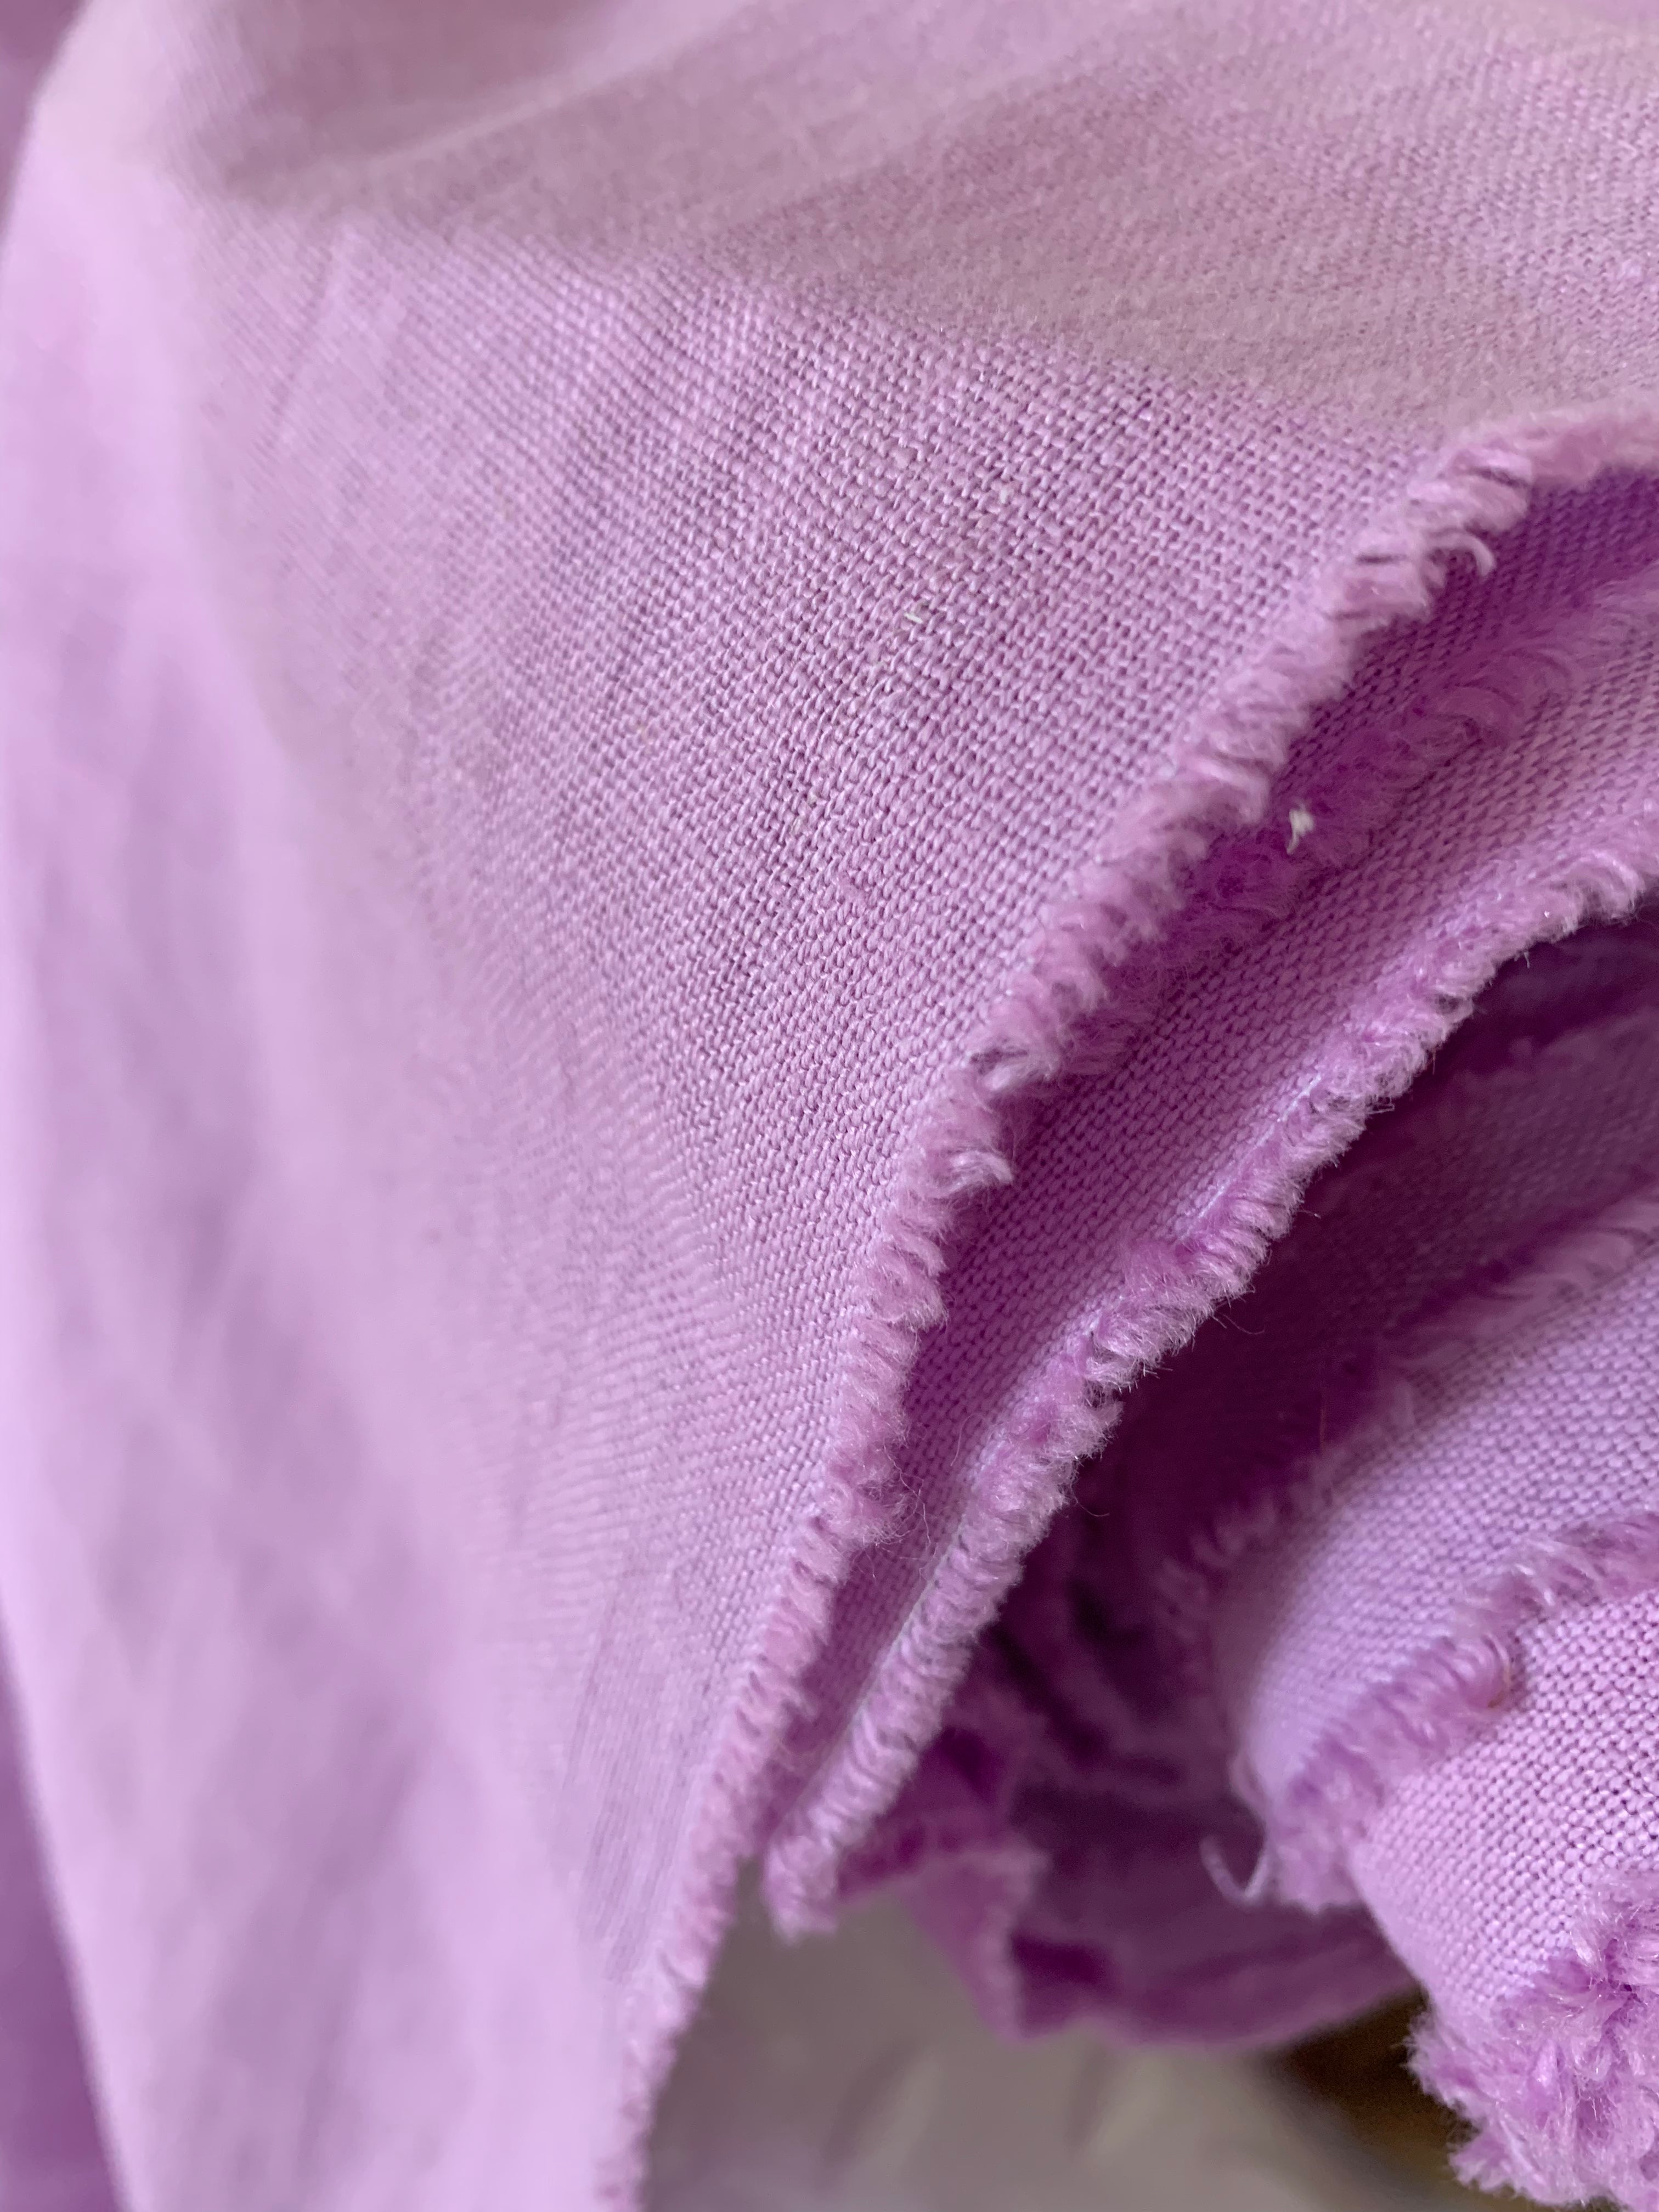 Lavendel: extra breites washed Leinen in frischem Lavendelton